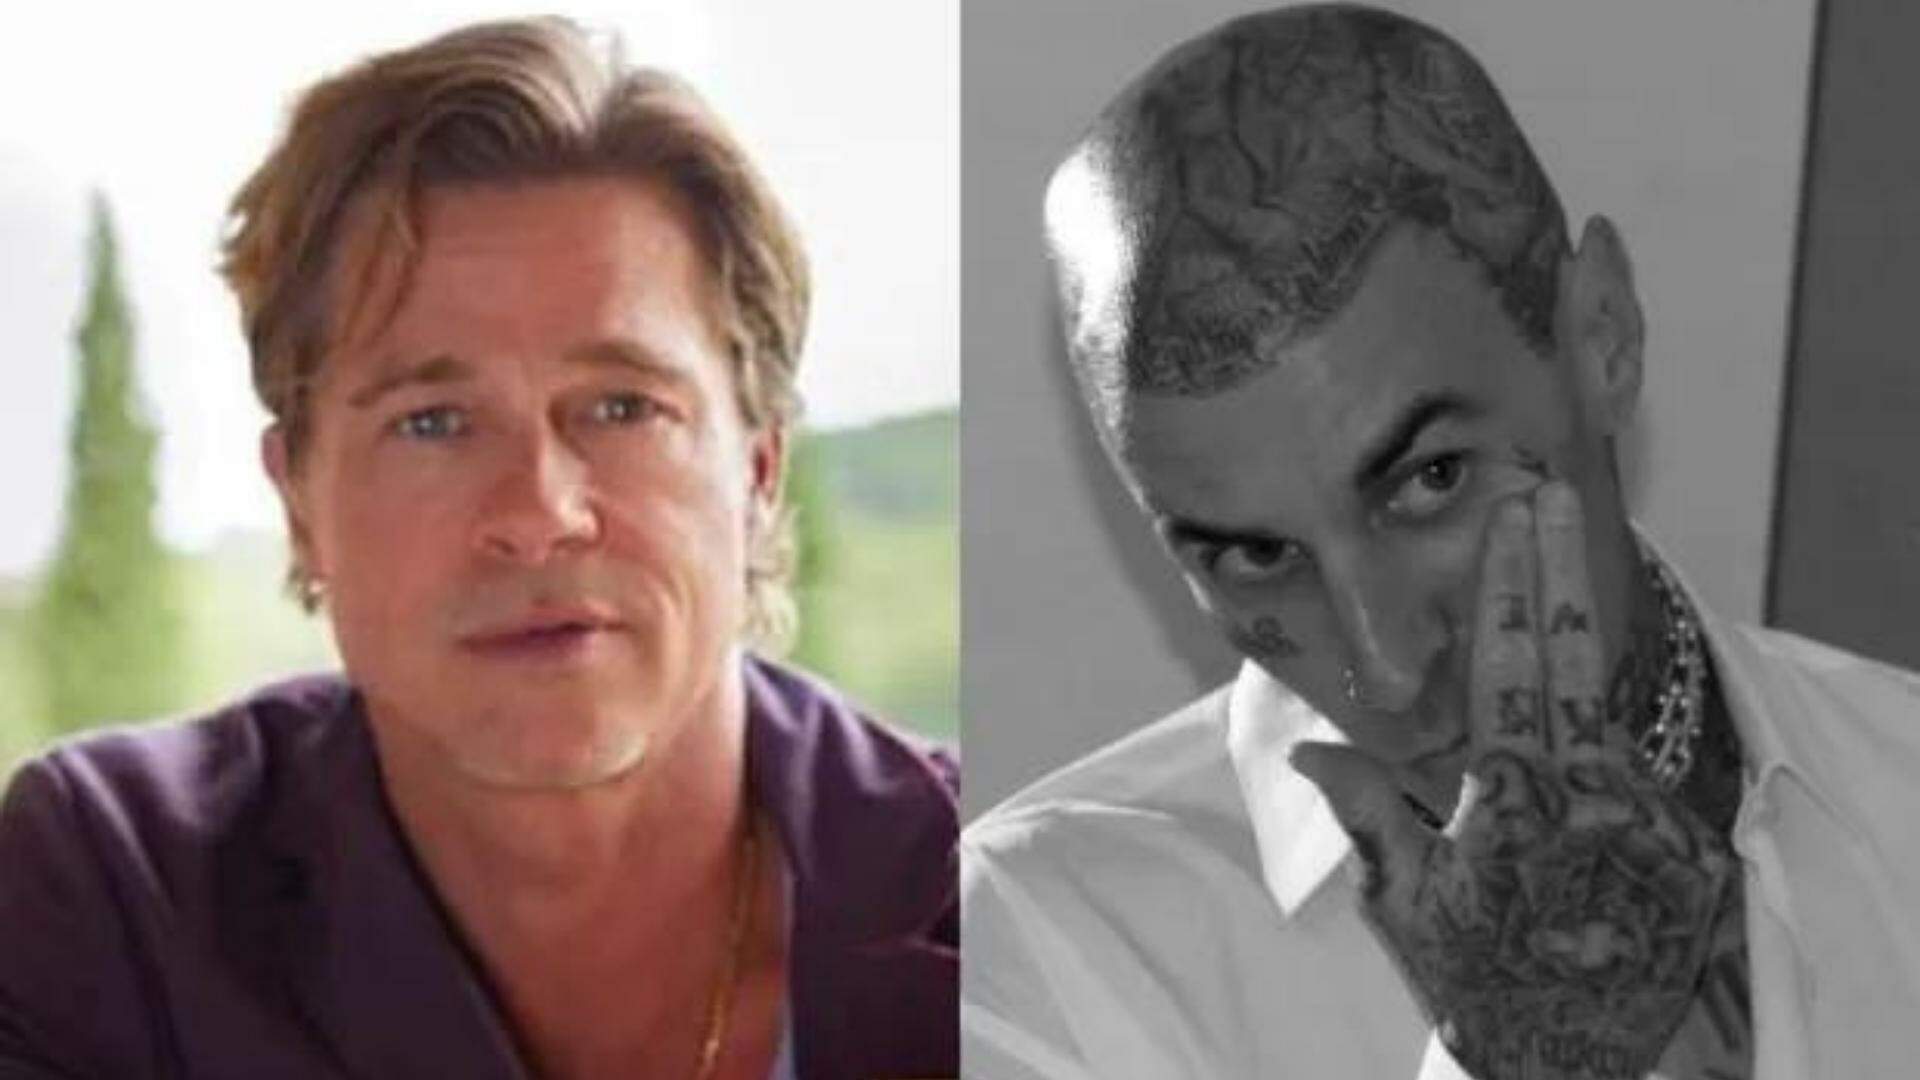 Beleza masculina? Brad Pitt e Travis Barker lançam suas próprias marcas de skincare - Metropolitana FM